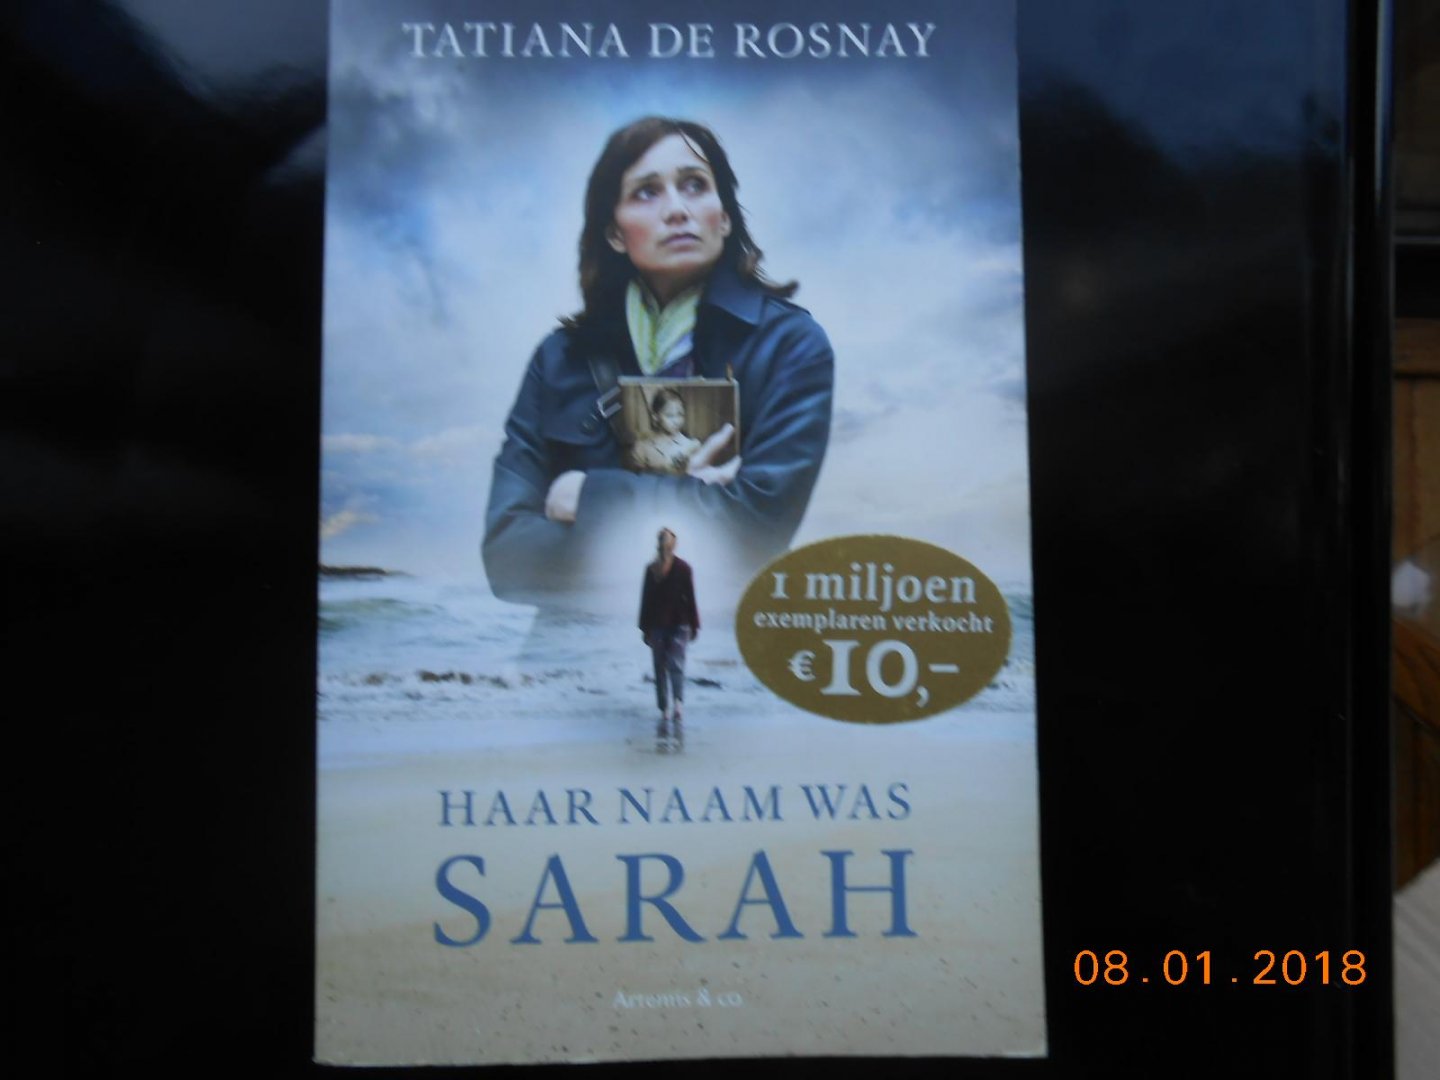 Rosnay, Tatiana de - Haar naam was Sarah - filmeditie